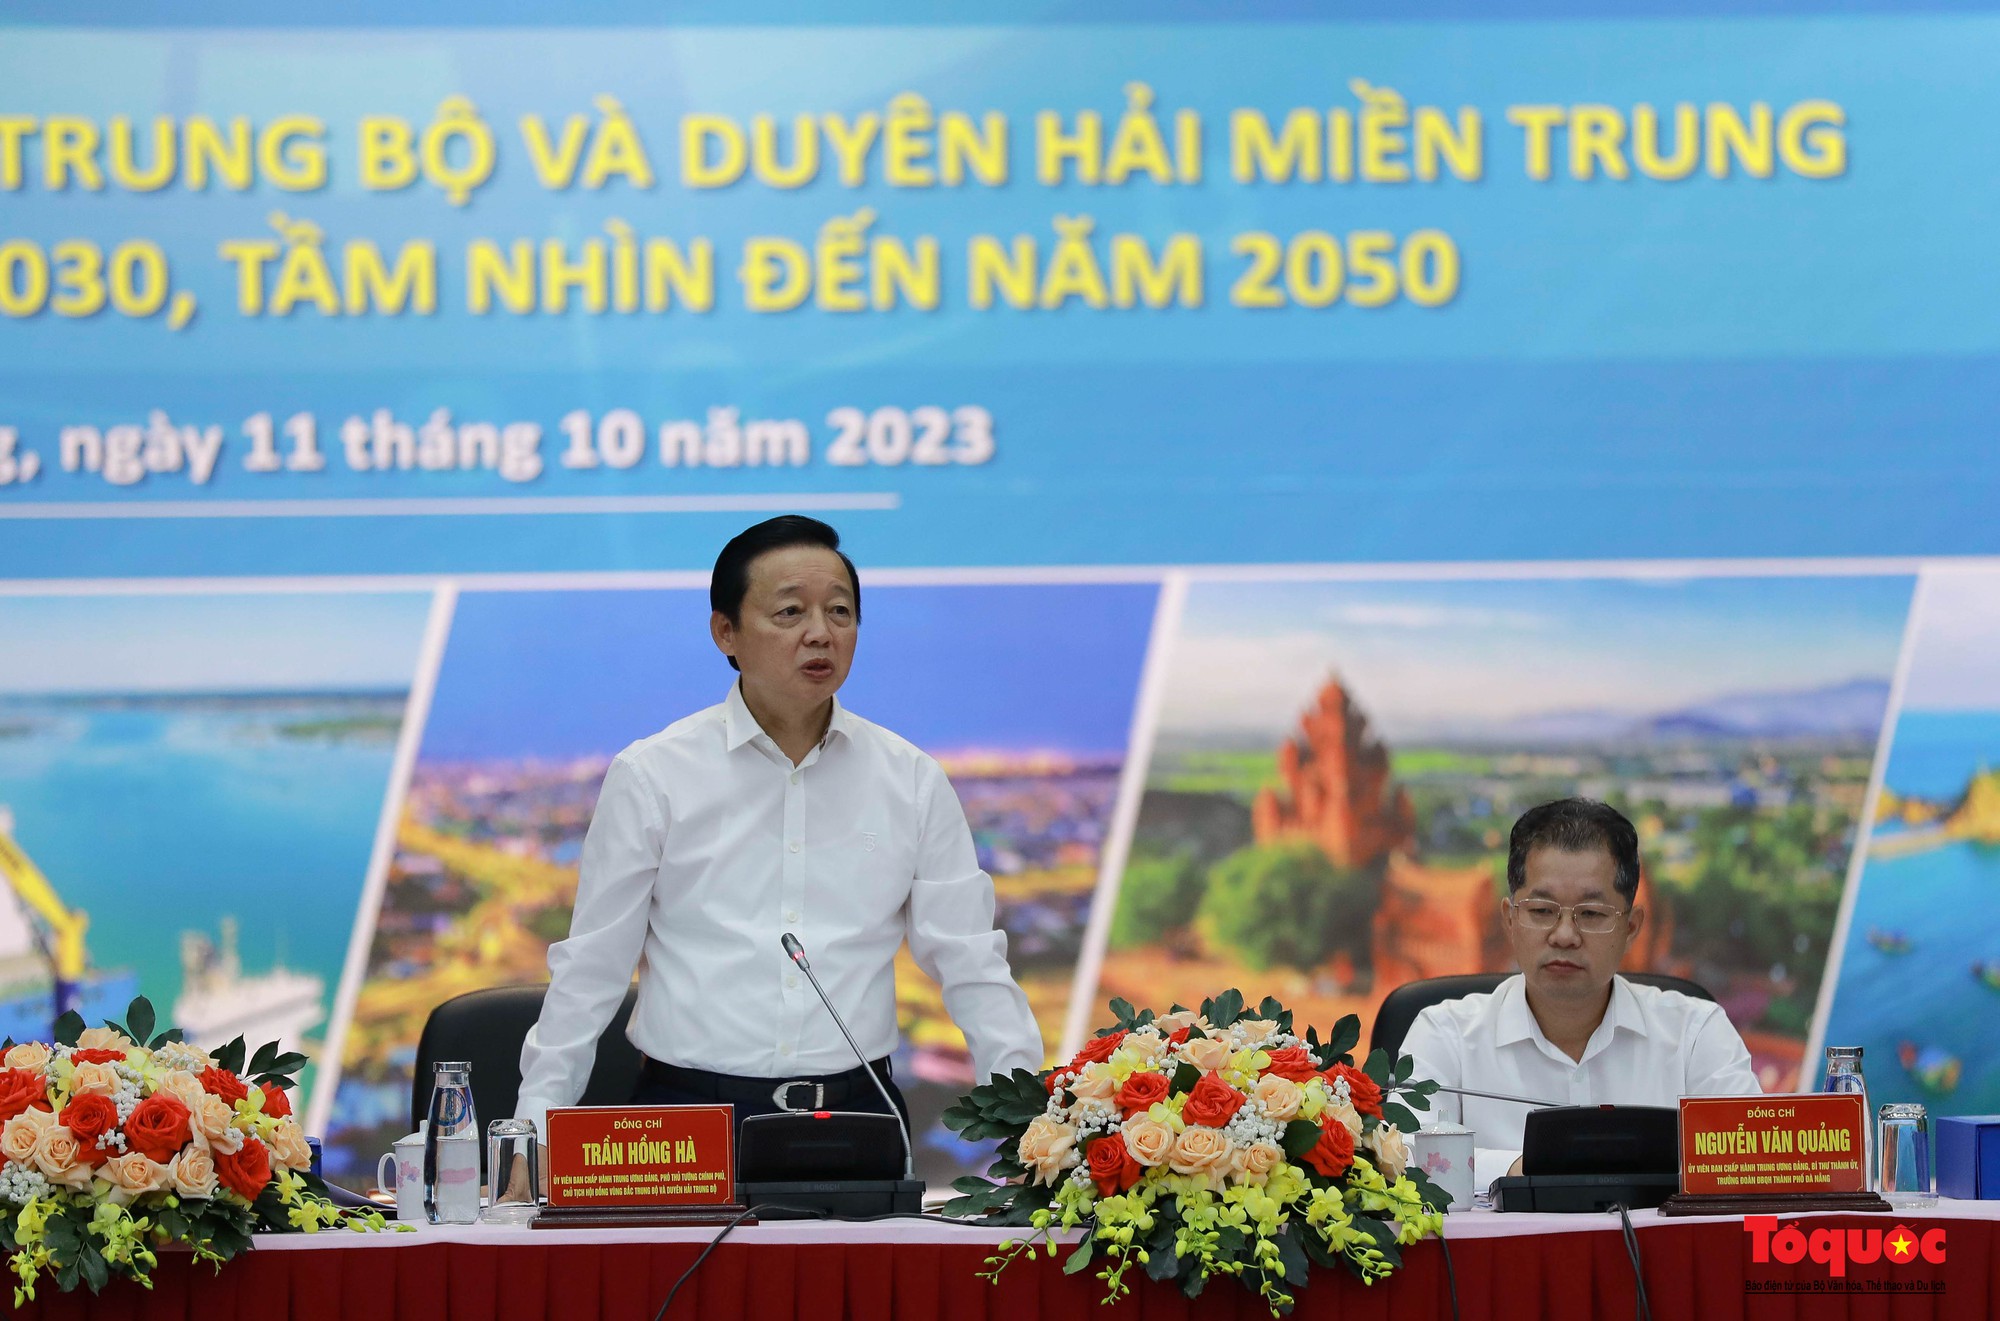 Bộ trưởng Bộ VHTTDL Nguyễn Văn Hùng: Quy hoạch vùng phải chú trọng phát triển du lịch văn hóa - Ảnh 6.